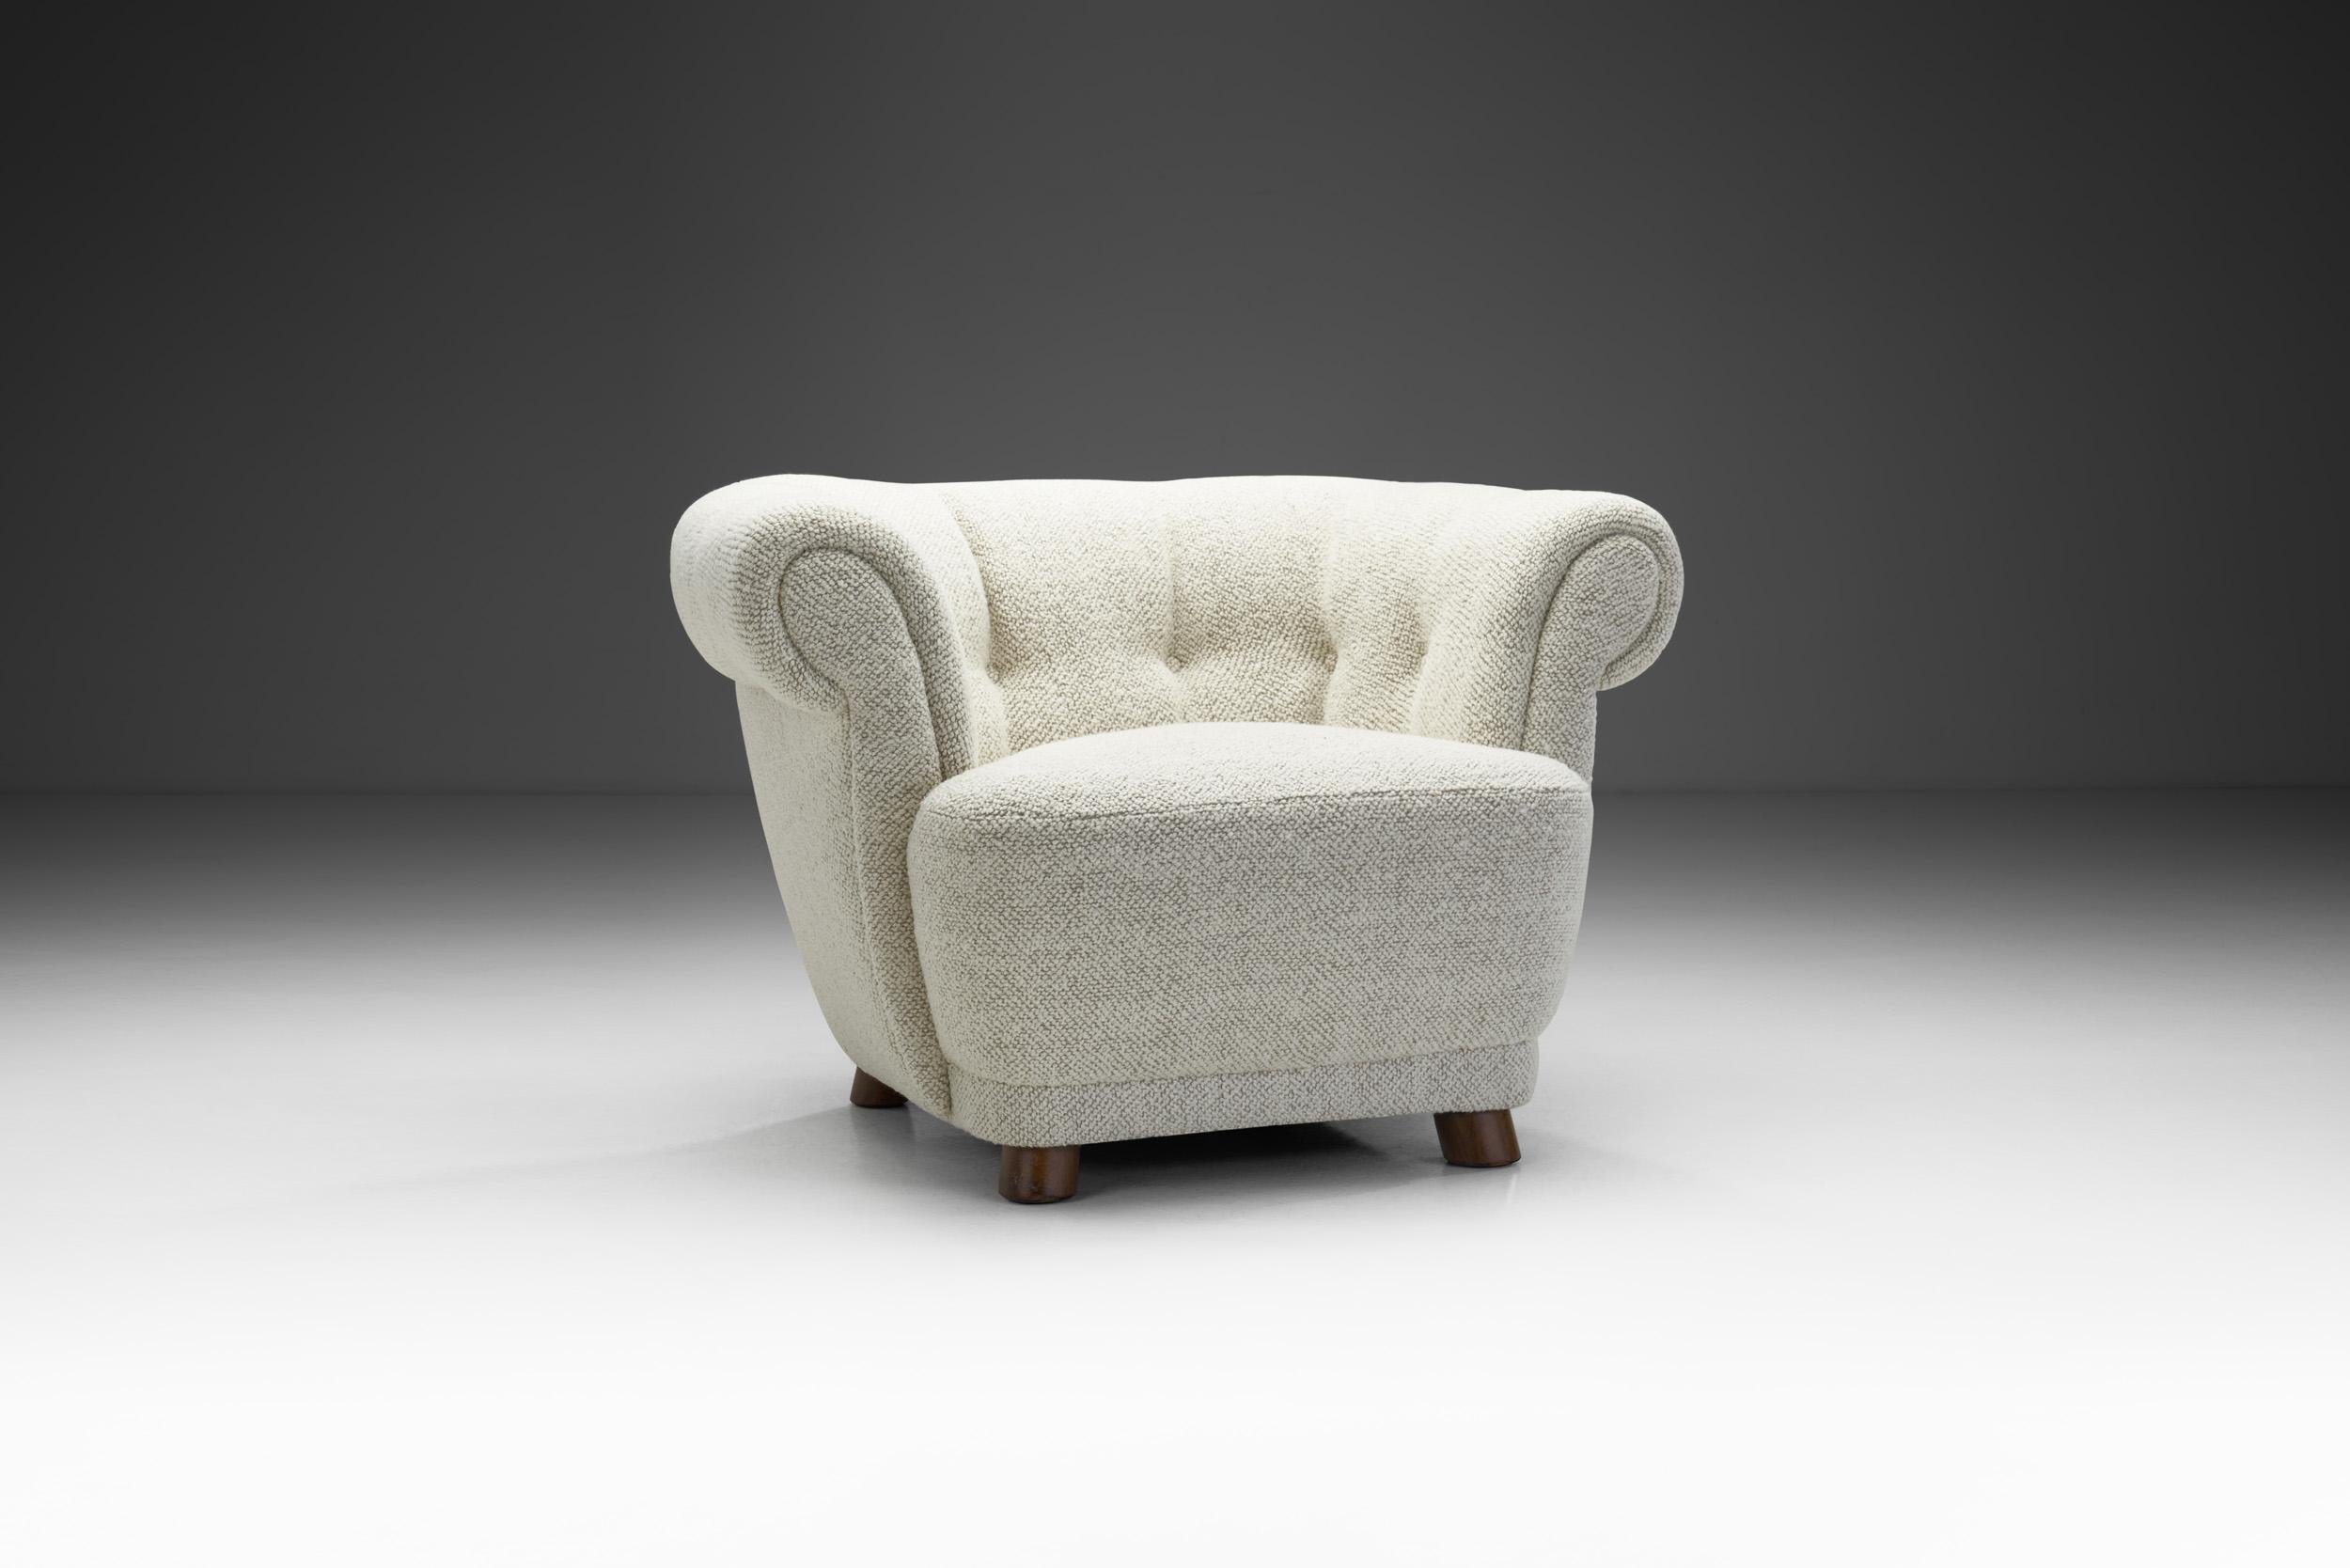 Ce magnifique fauteuil est l'interprétation danoise d'un style classique de siège rembourré britannique, le Chesterfield. Compte tenu de ses qualités structurelles, matérielles et visuelles, ce fauteuil est l'illustration parfaite de la raison pour